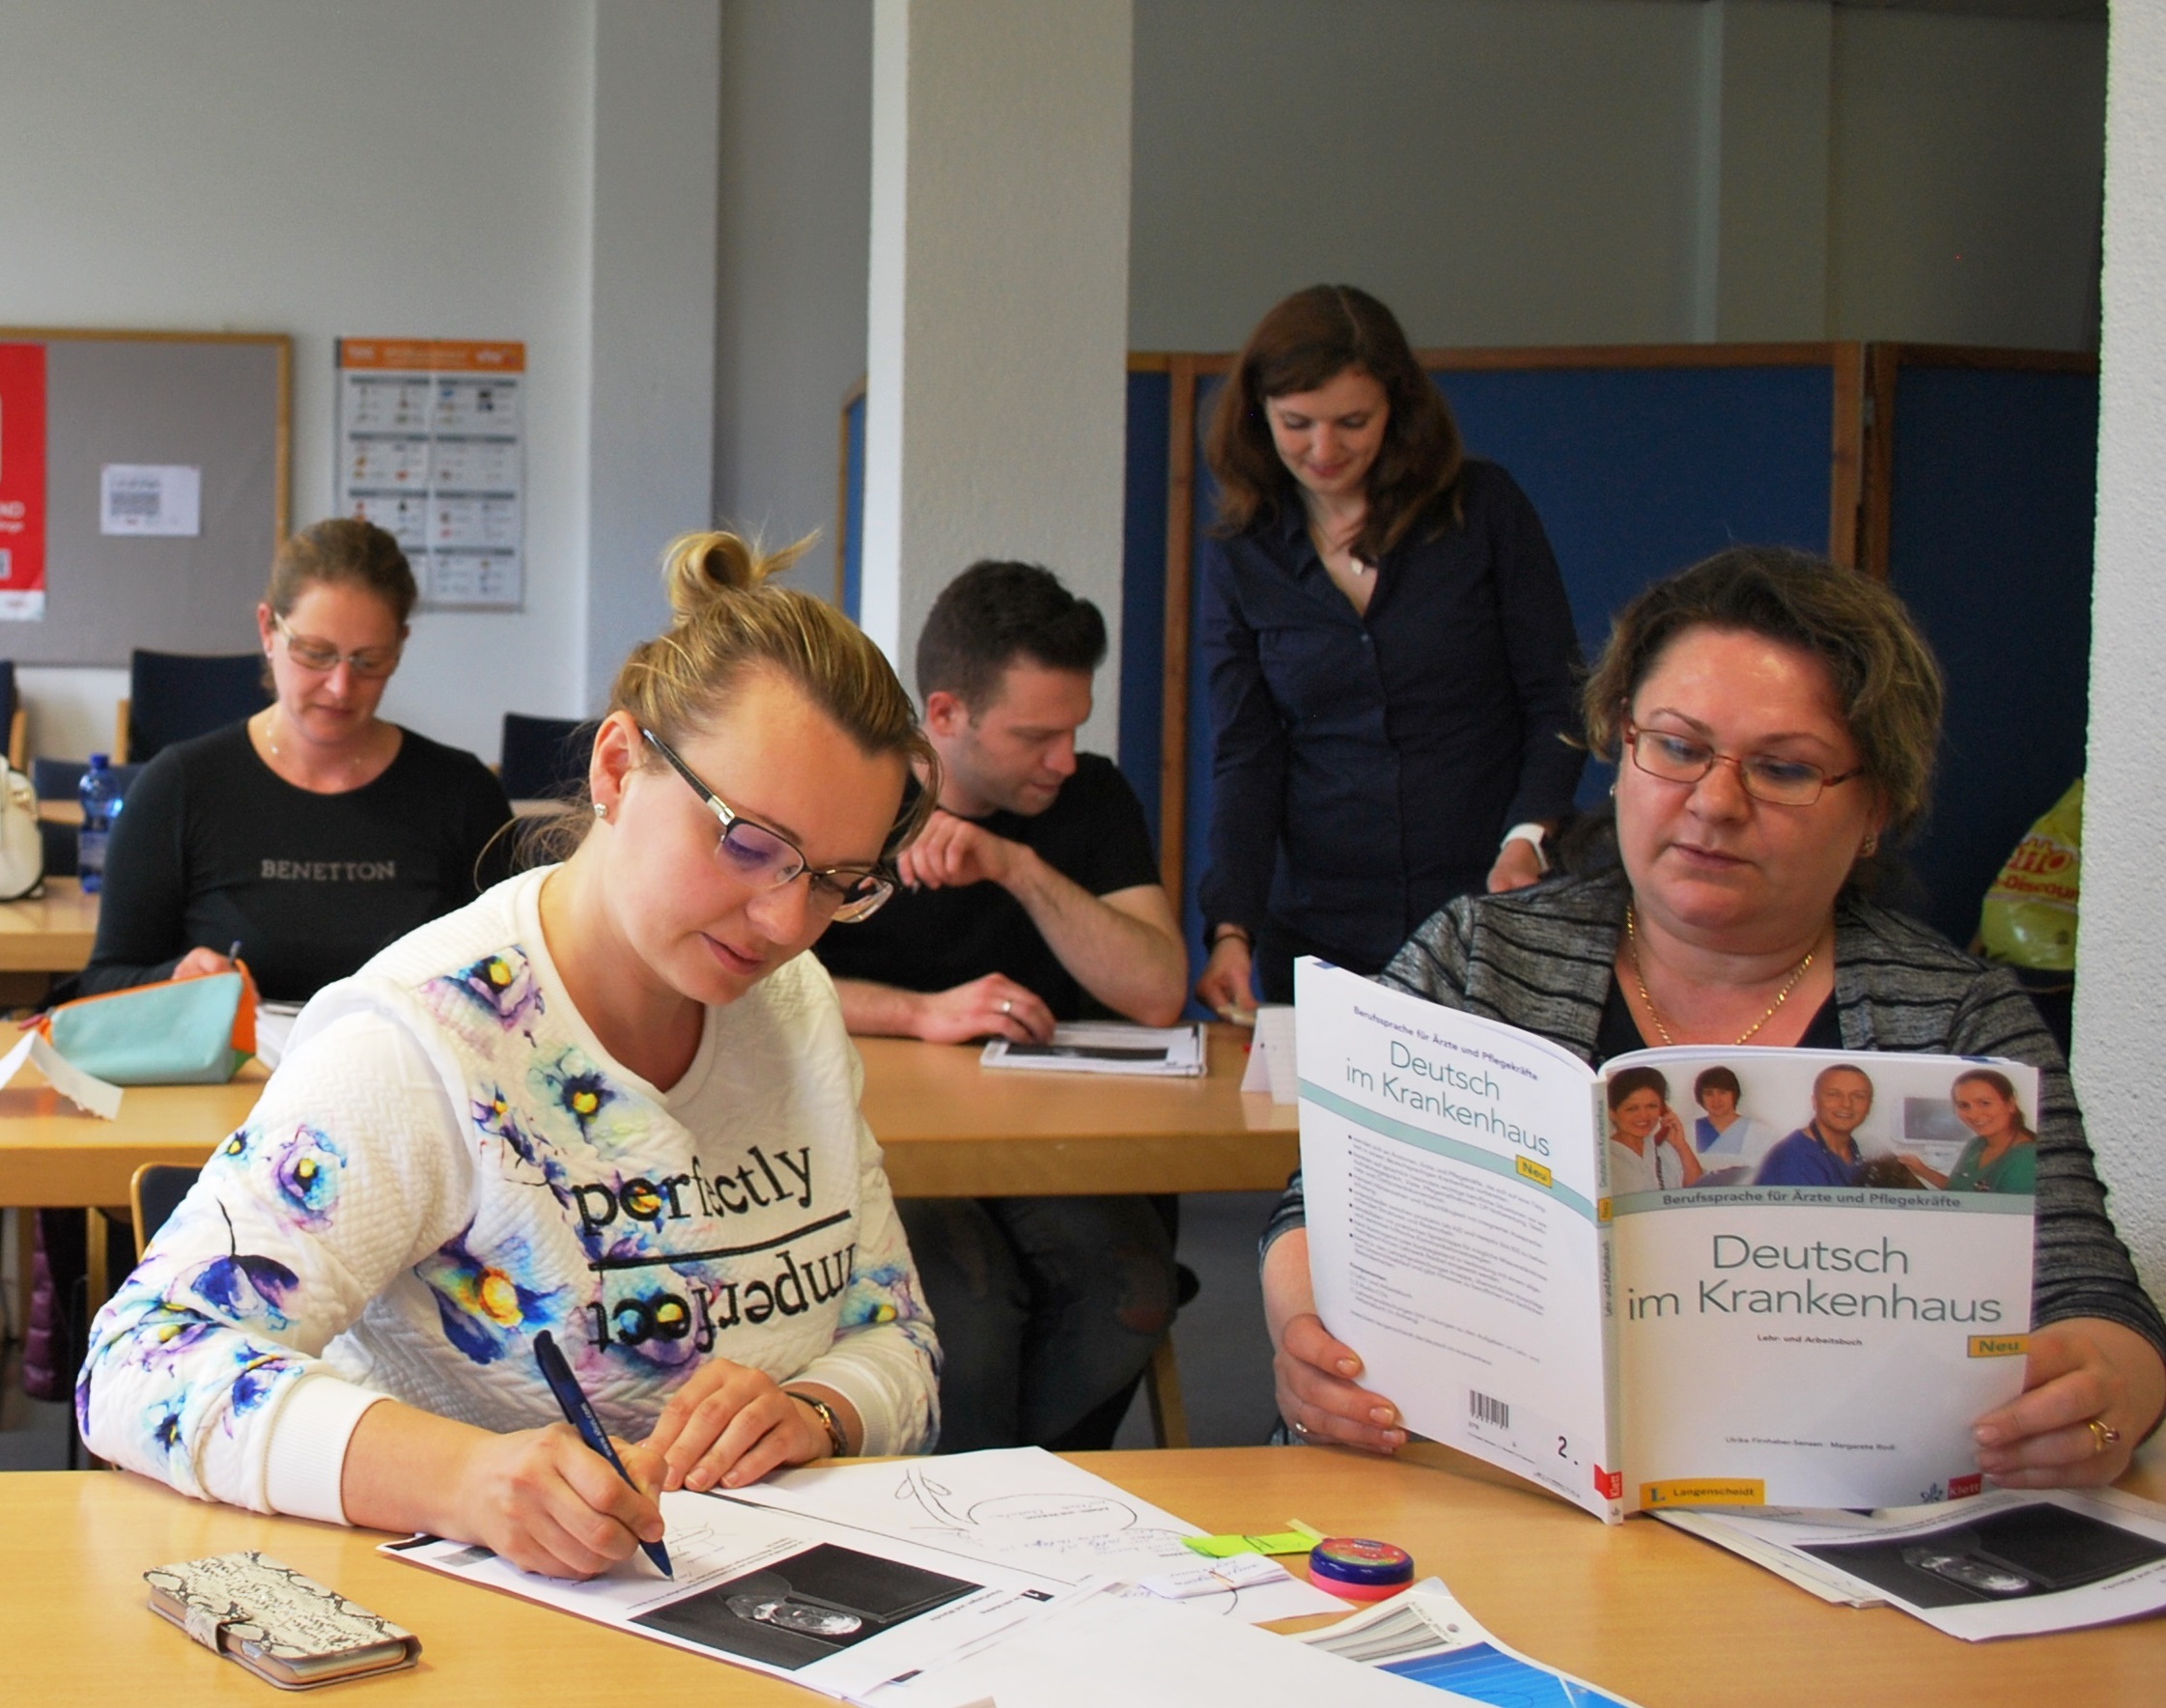 Hier sieht man zwei Teilnehmer*innen die an einen Berufsbezogenen Deutsch Sprachkurs teilnehmen.